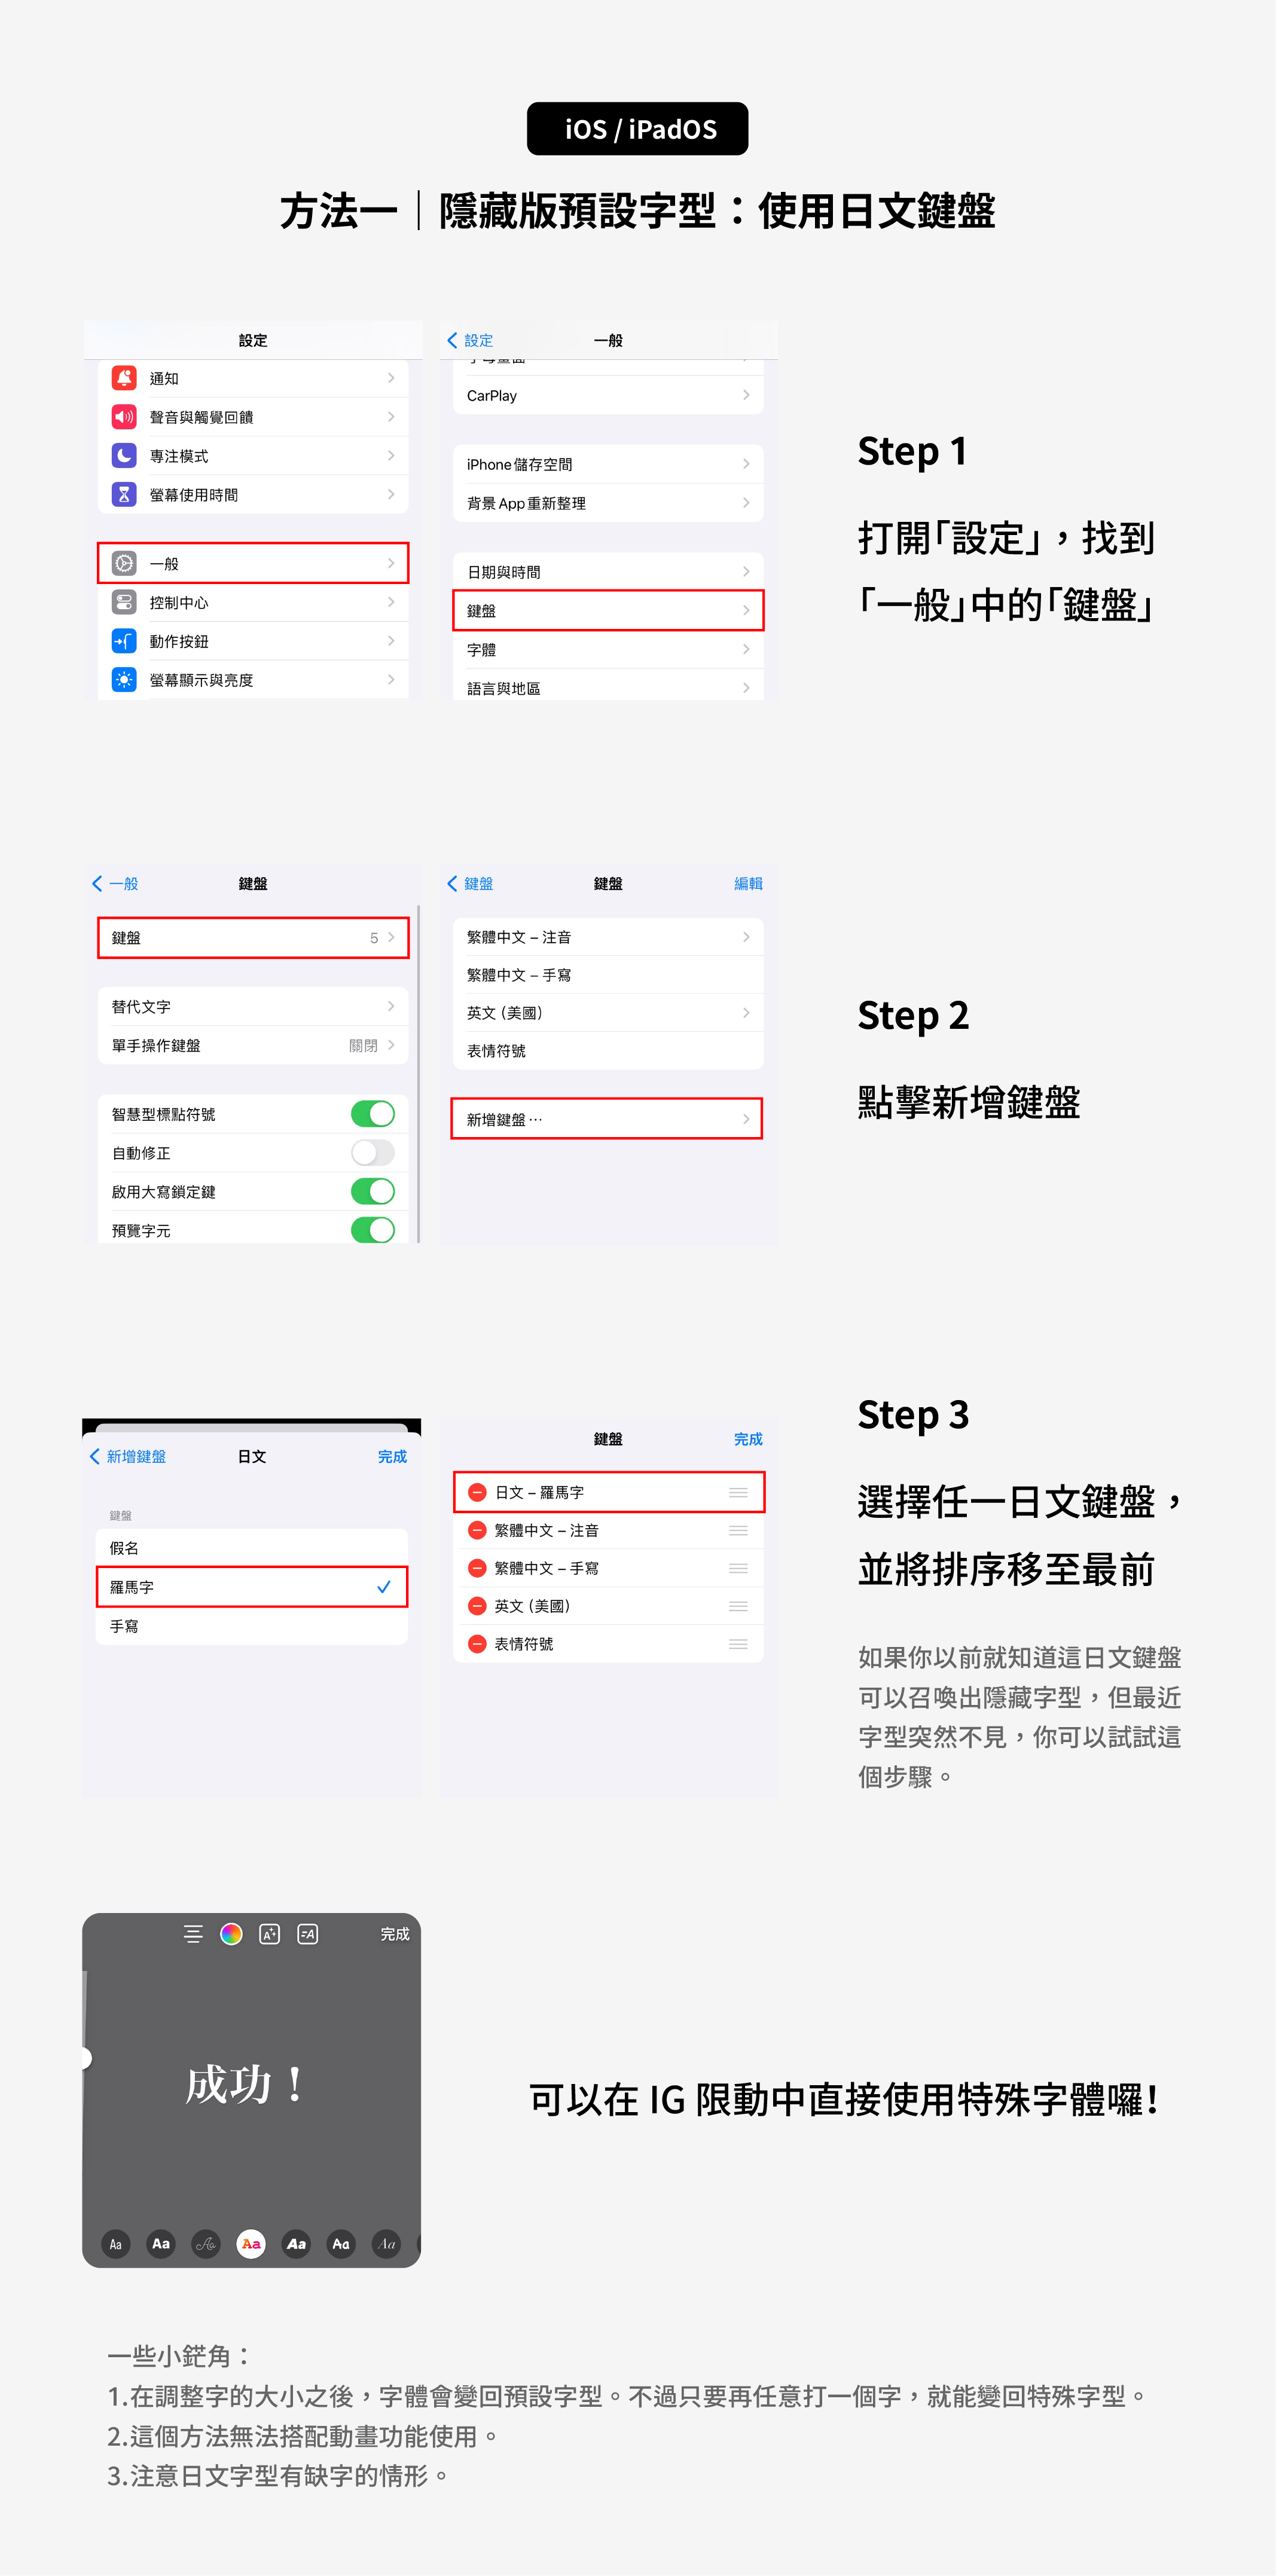 方法一：新增日文鍵盤，以在 iOS 系統的 IG 使用特殊字體